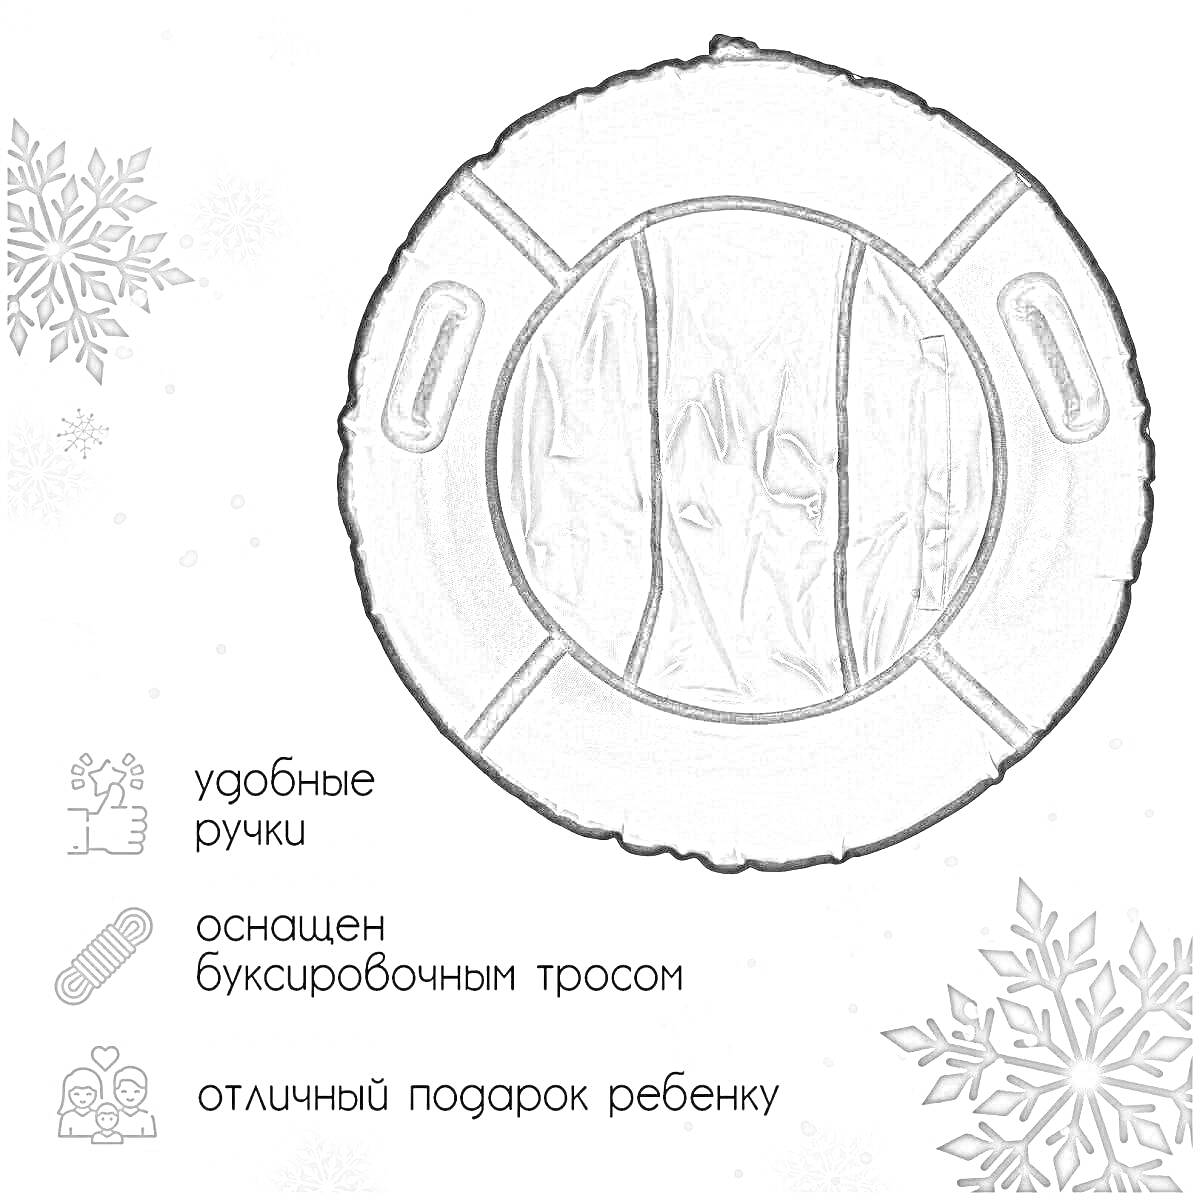 Раскраска Ватрушка тюбинг с удобными ручками и буксировочным тросом, отличный подарок ребенку, снежинки